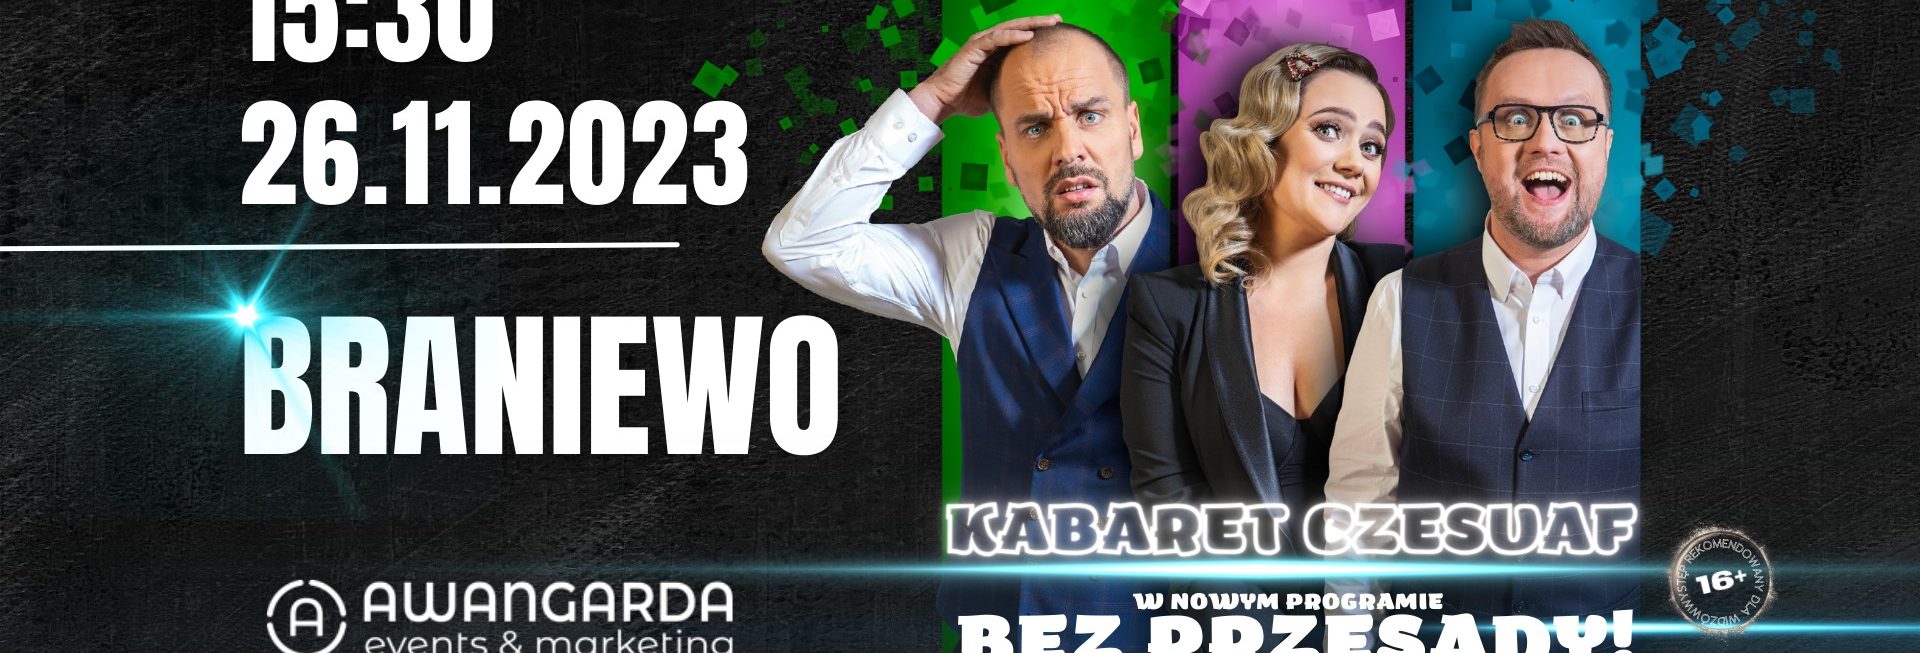 Plakat zapraszający w niedzielę 26 listopada 2023 r. do Braniewa na występ Kabaretu Czesuaf - Bez przesady! Braniewo 2023.